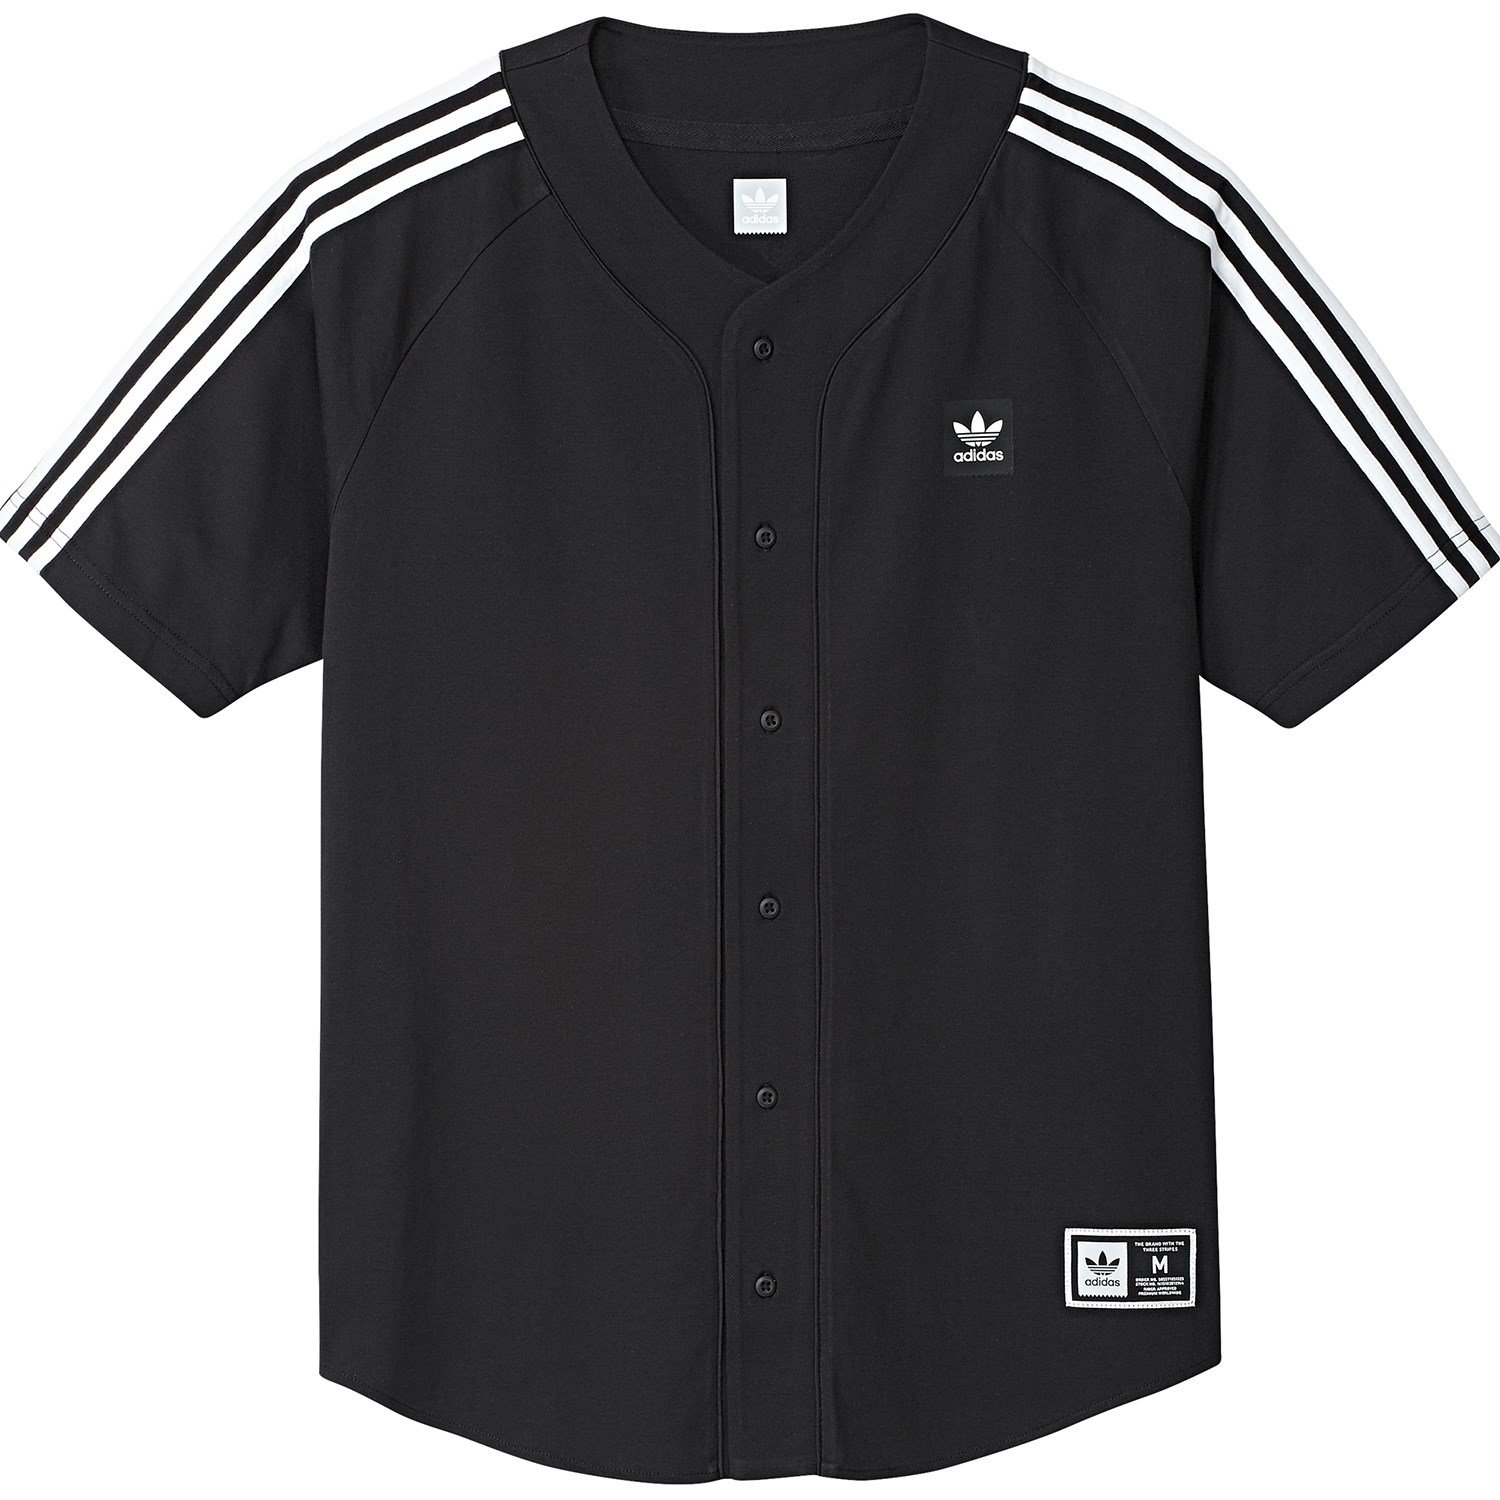 Adidas Baseball Jersey T-Shirt